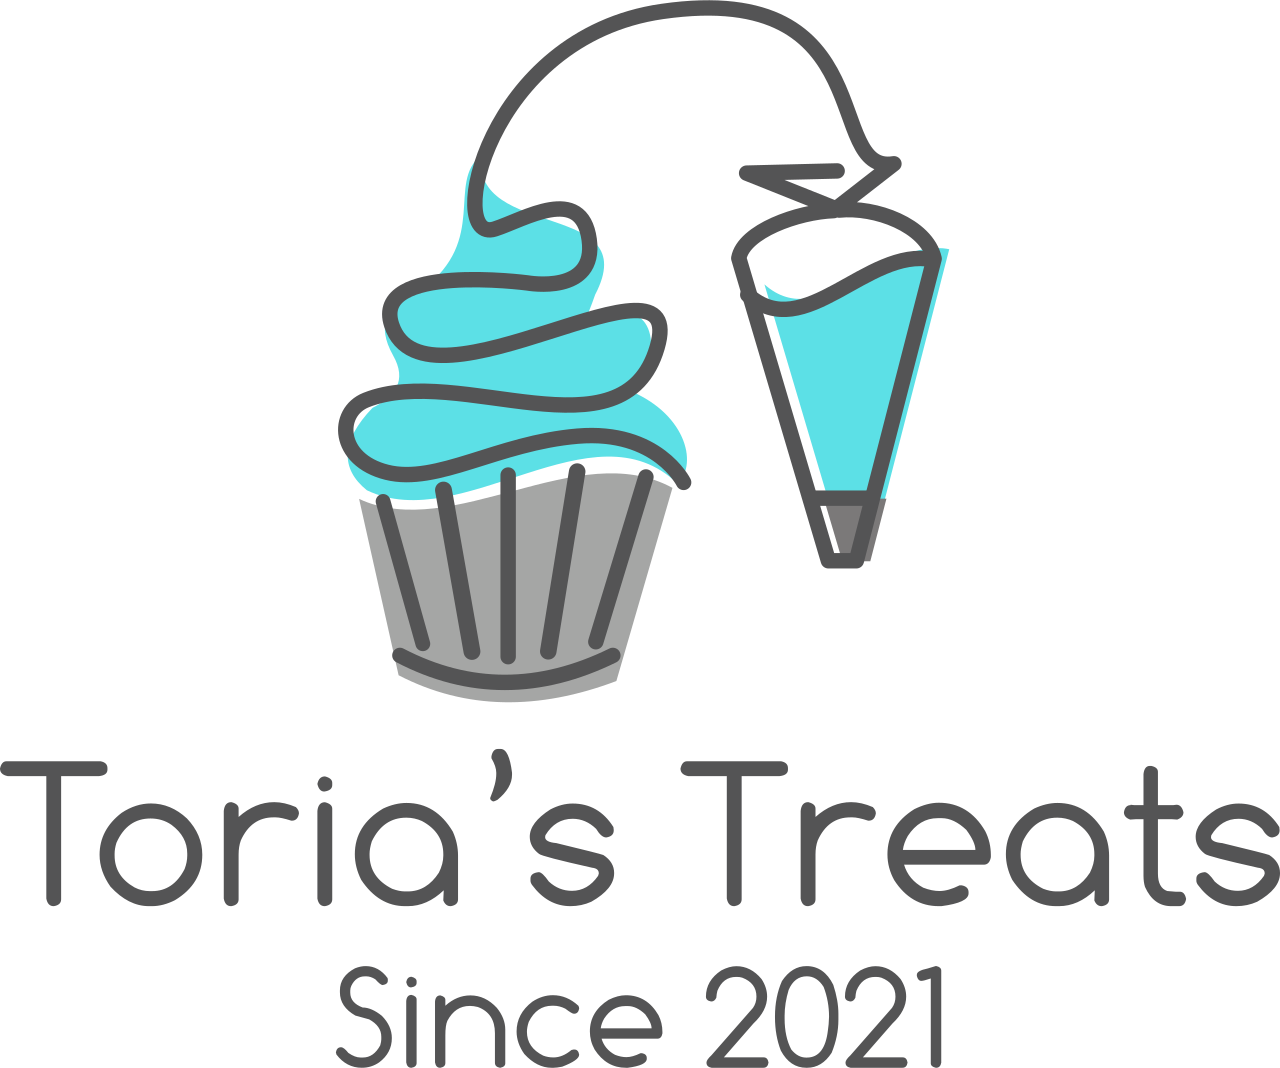 Toria’s Treats's logo